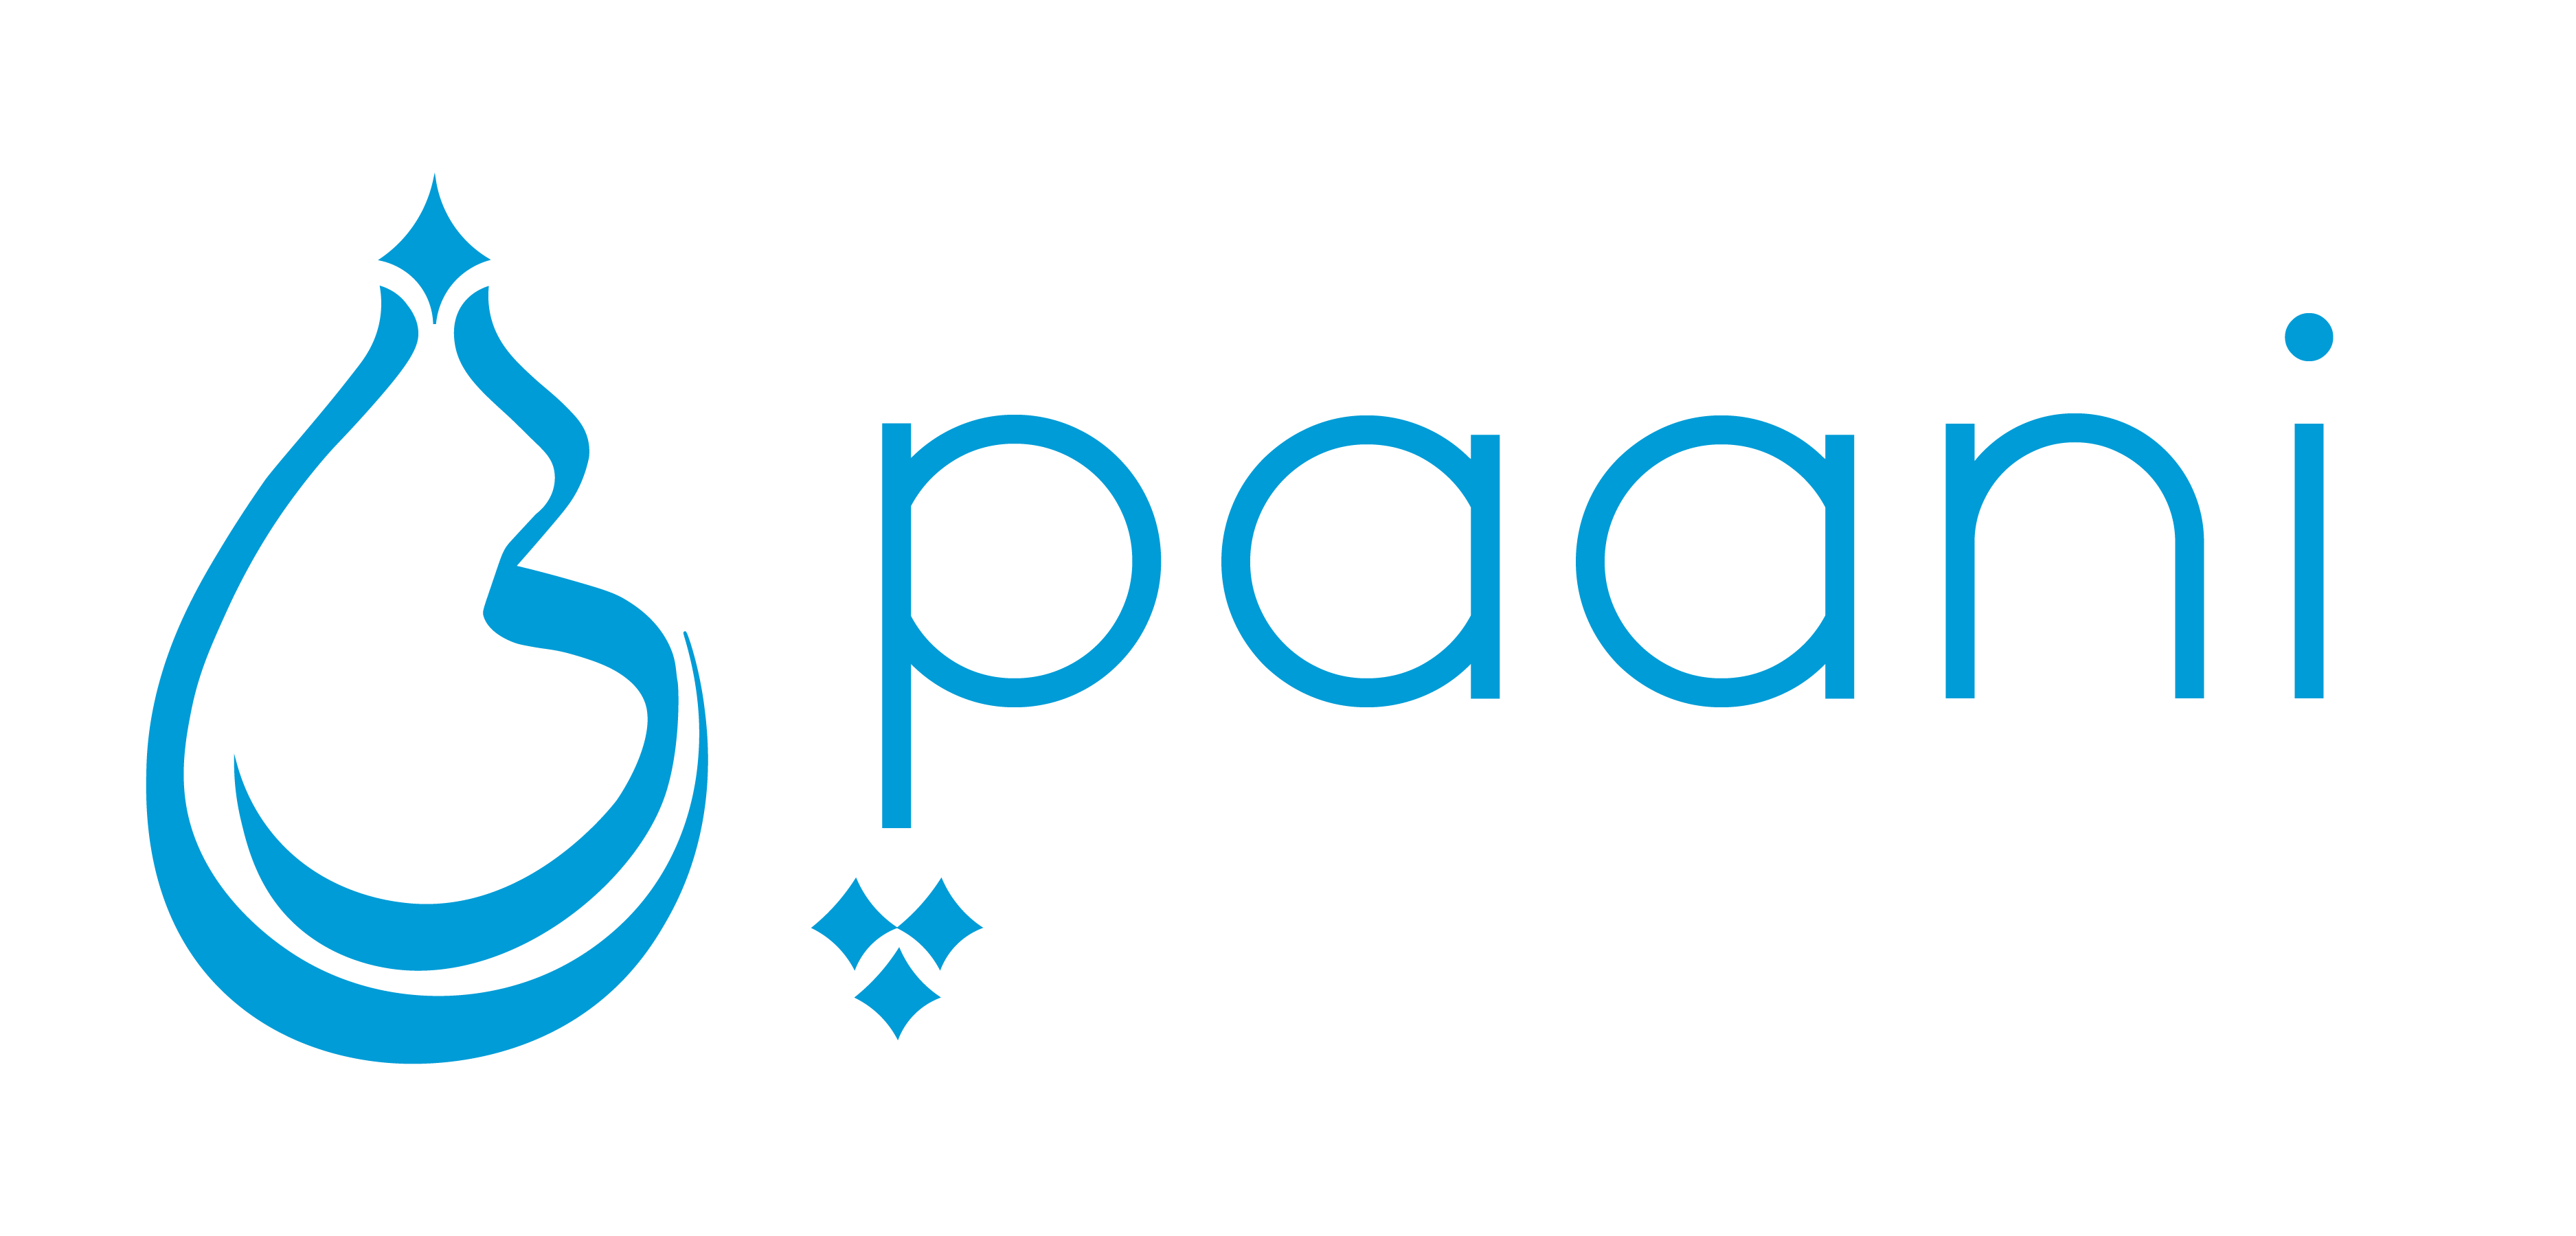 Paani Project logo